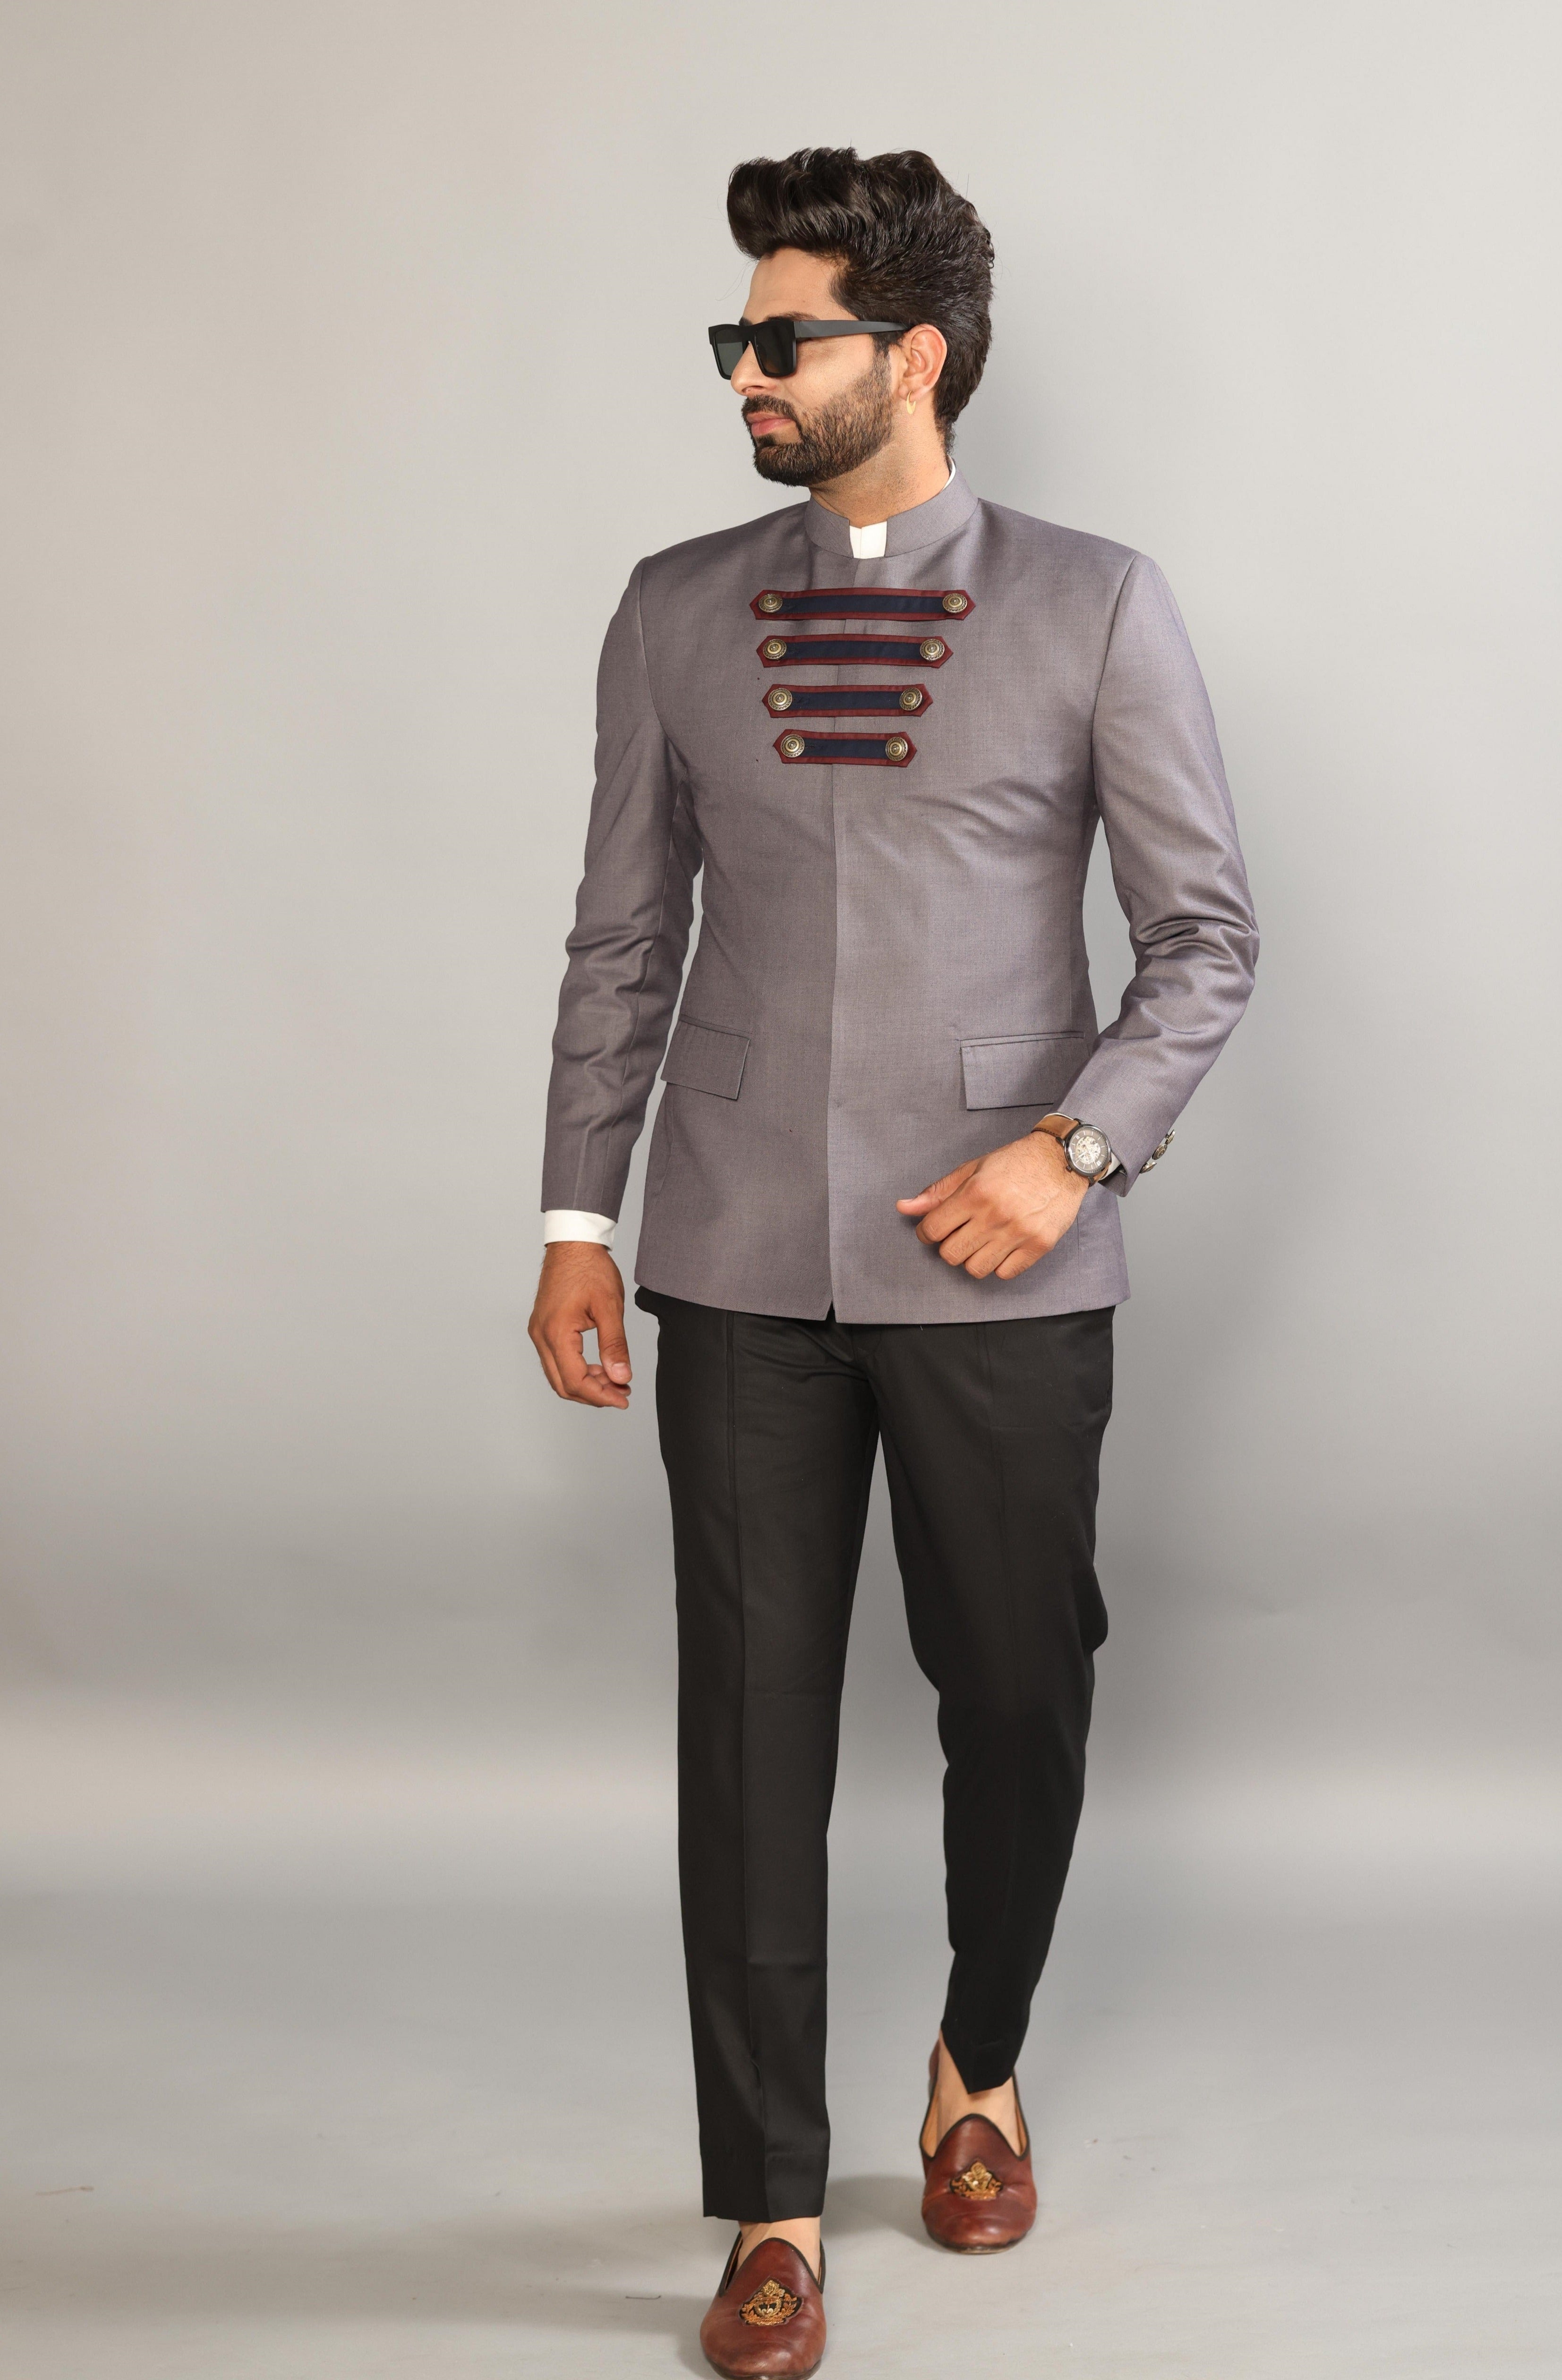 Jodhpuri Suit for Men Designer Jacket Indian Partywear Pakistani Dress  Wedding Suit Jodhpuri Sherwani Coat Pant Haldi Sangeet Blazer Outfit - Etsy